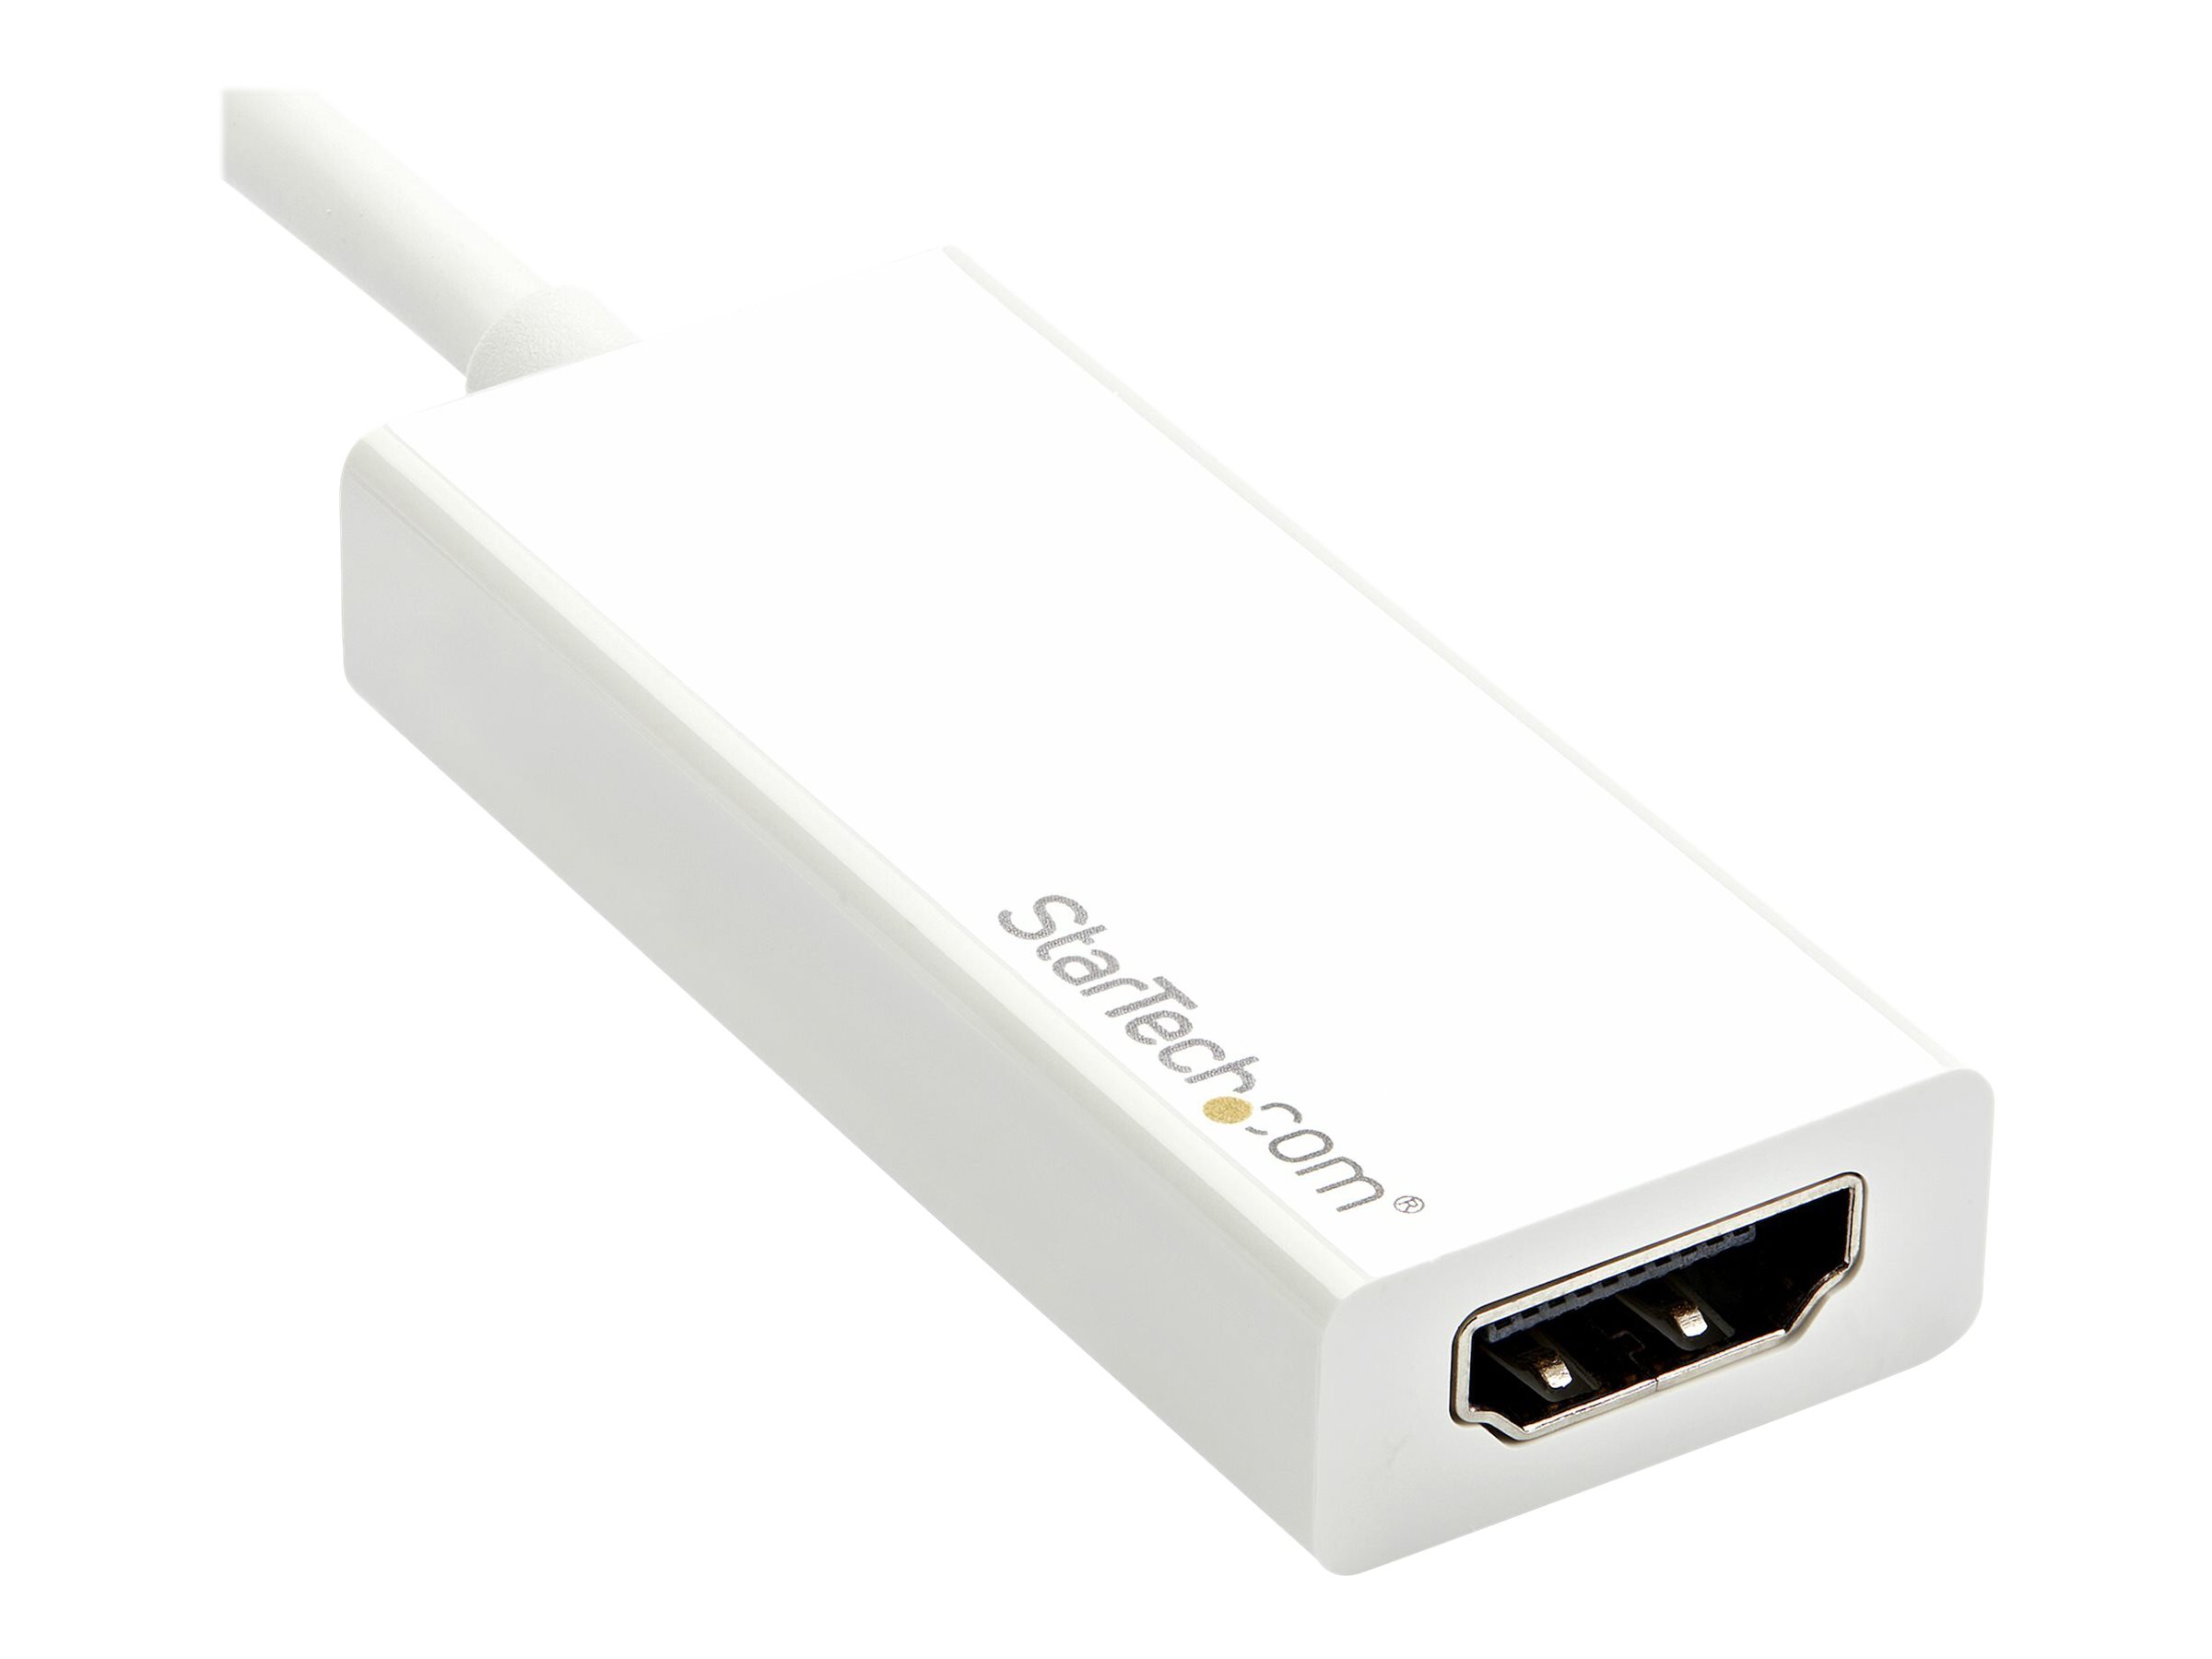 StarTech.com Adaptateur USB C vers HDMI - Convertisseur USB Type C vers HDMI - Compatible Thunderbolt 3 - 4K 60 Hz - Blanc (CDP2HD4K60W) - High Speed - adaptateur vidéo - 24 pin USB-C mâle pour HDMI femelle - 15 cm - blanc - support 4K - CDP2HD4K60W - Accessoires pour téléviseurs